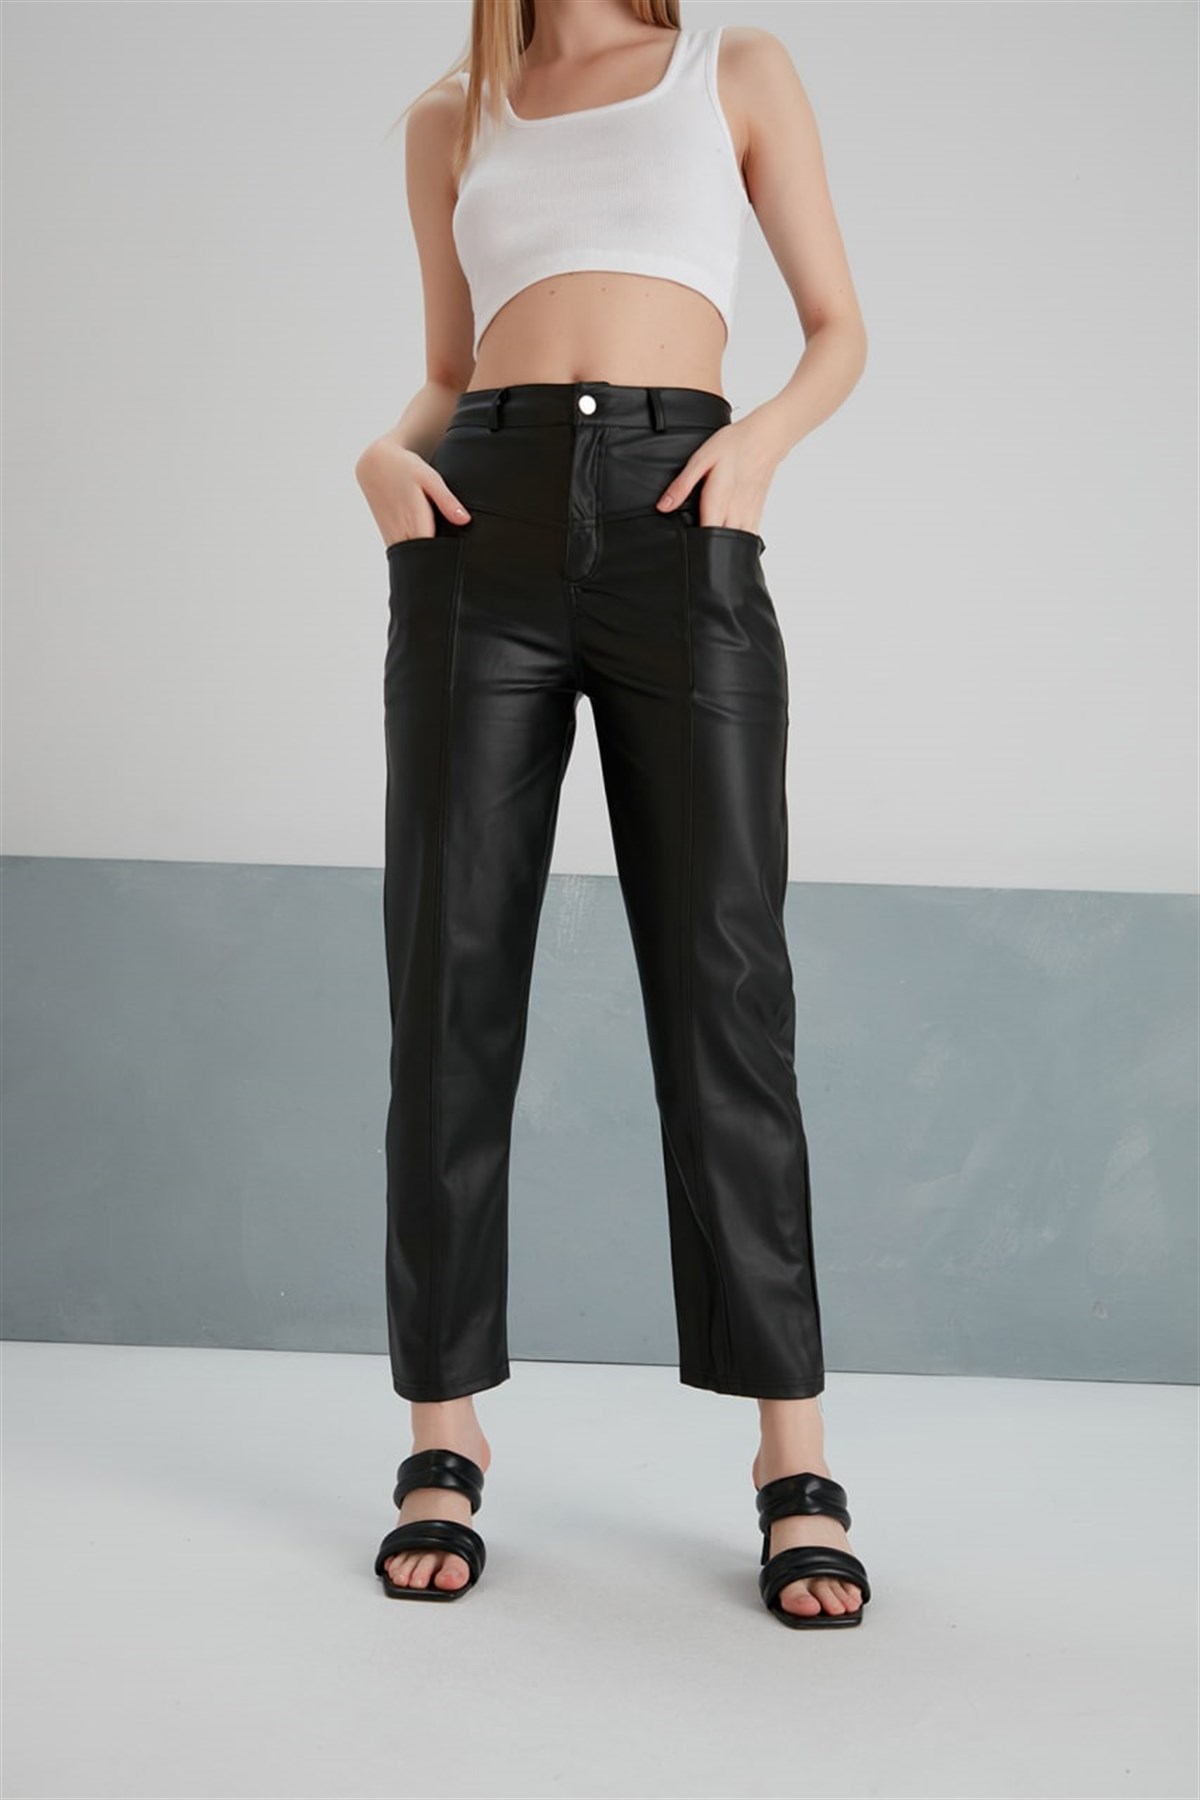 MDZ COLLECTION Kadın Yüksek Bel İçi Kürklü Zara Cepli Siyah Deri Pantolon -  Mdz Collection